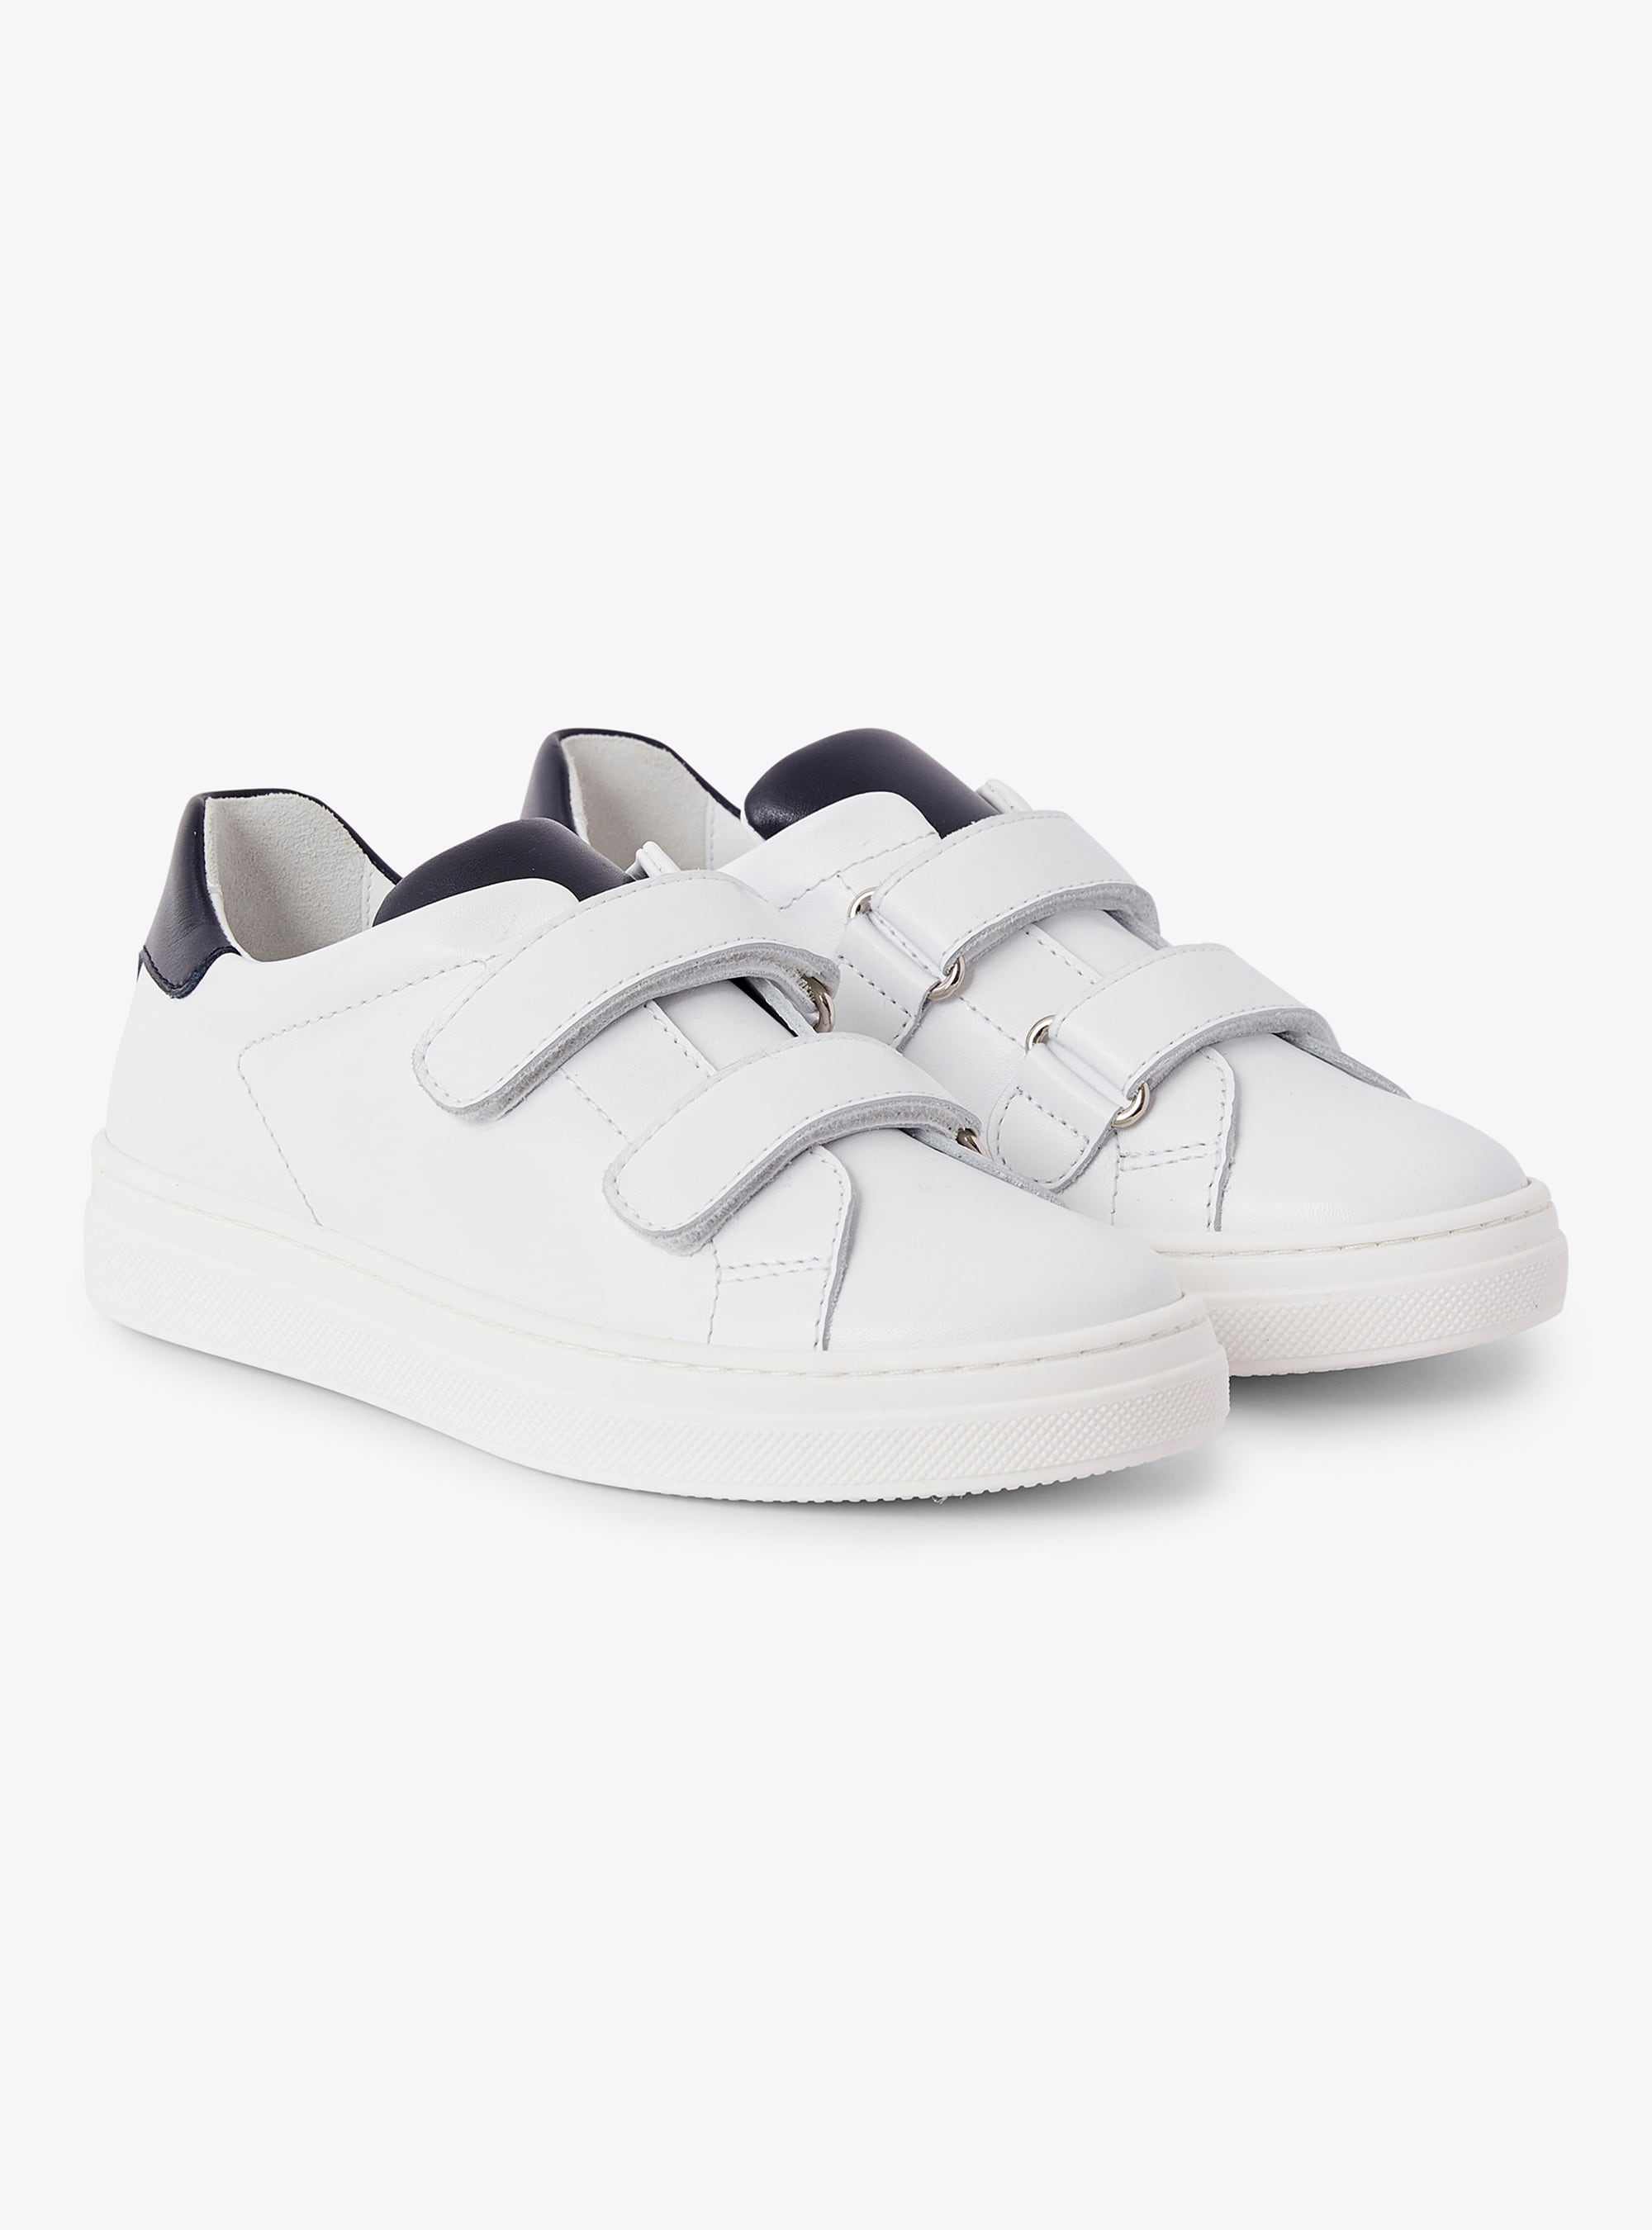 Sneaker aus weißem Leder mit Klettverschluss - Schuhe - Il Gufo